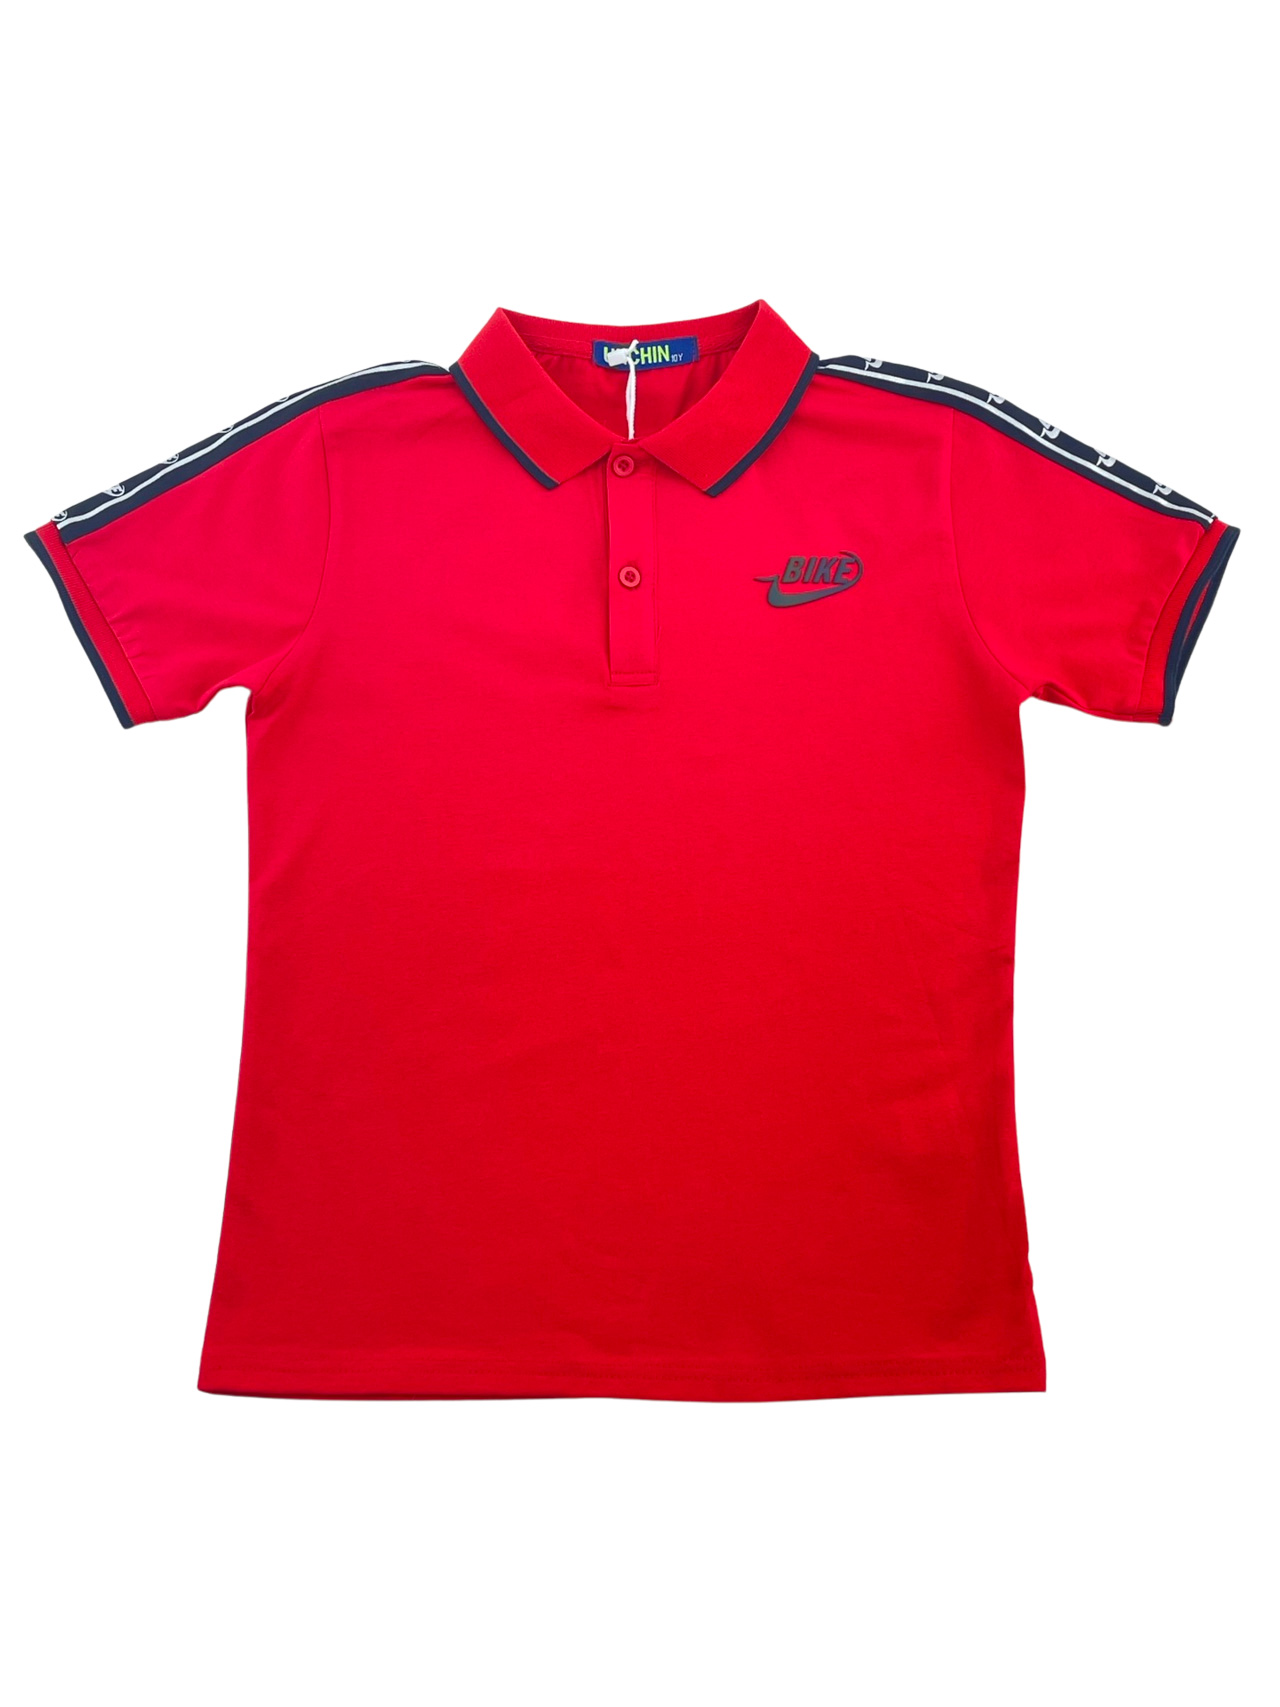 Boy's polo shirt code HM5288